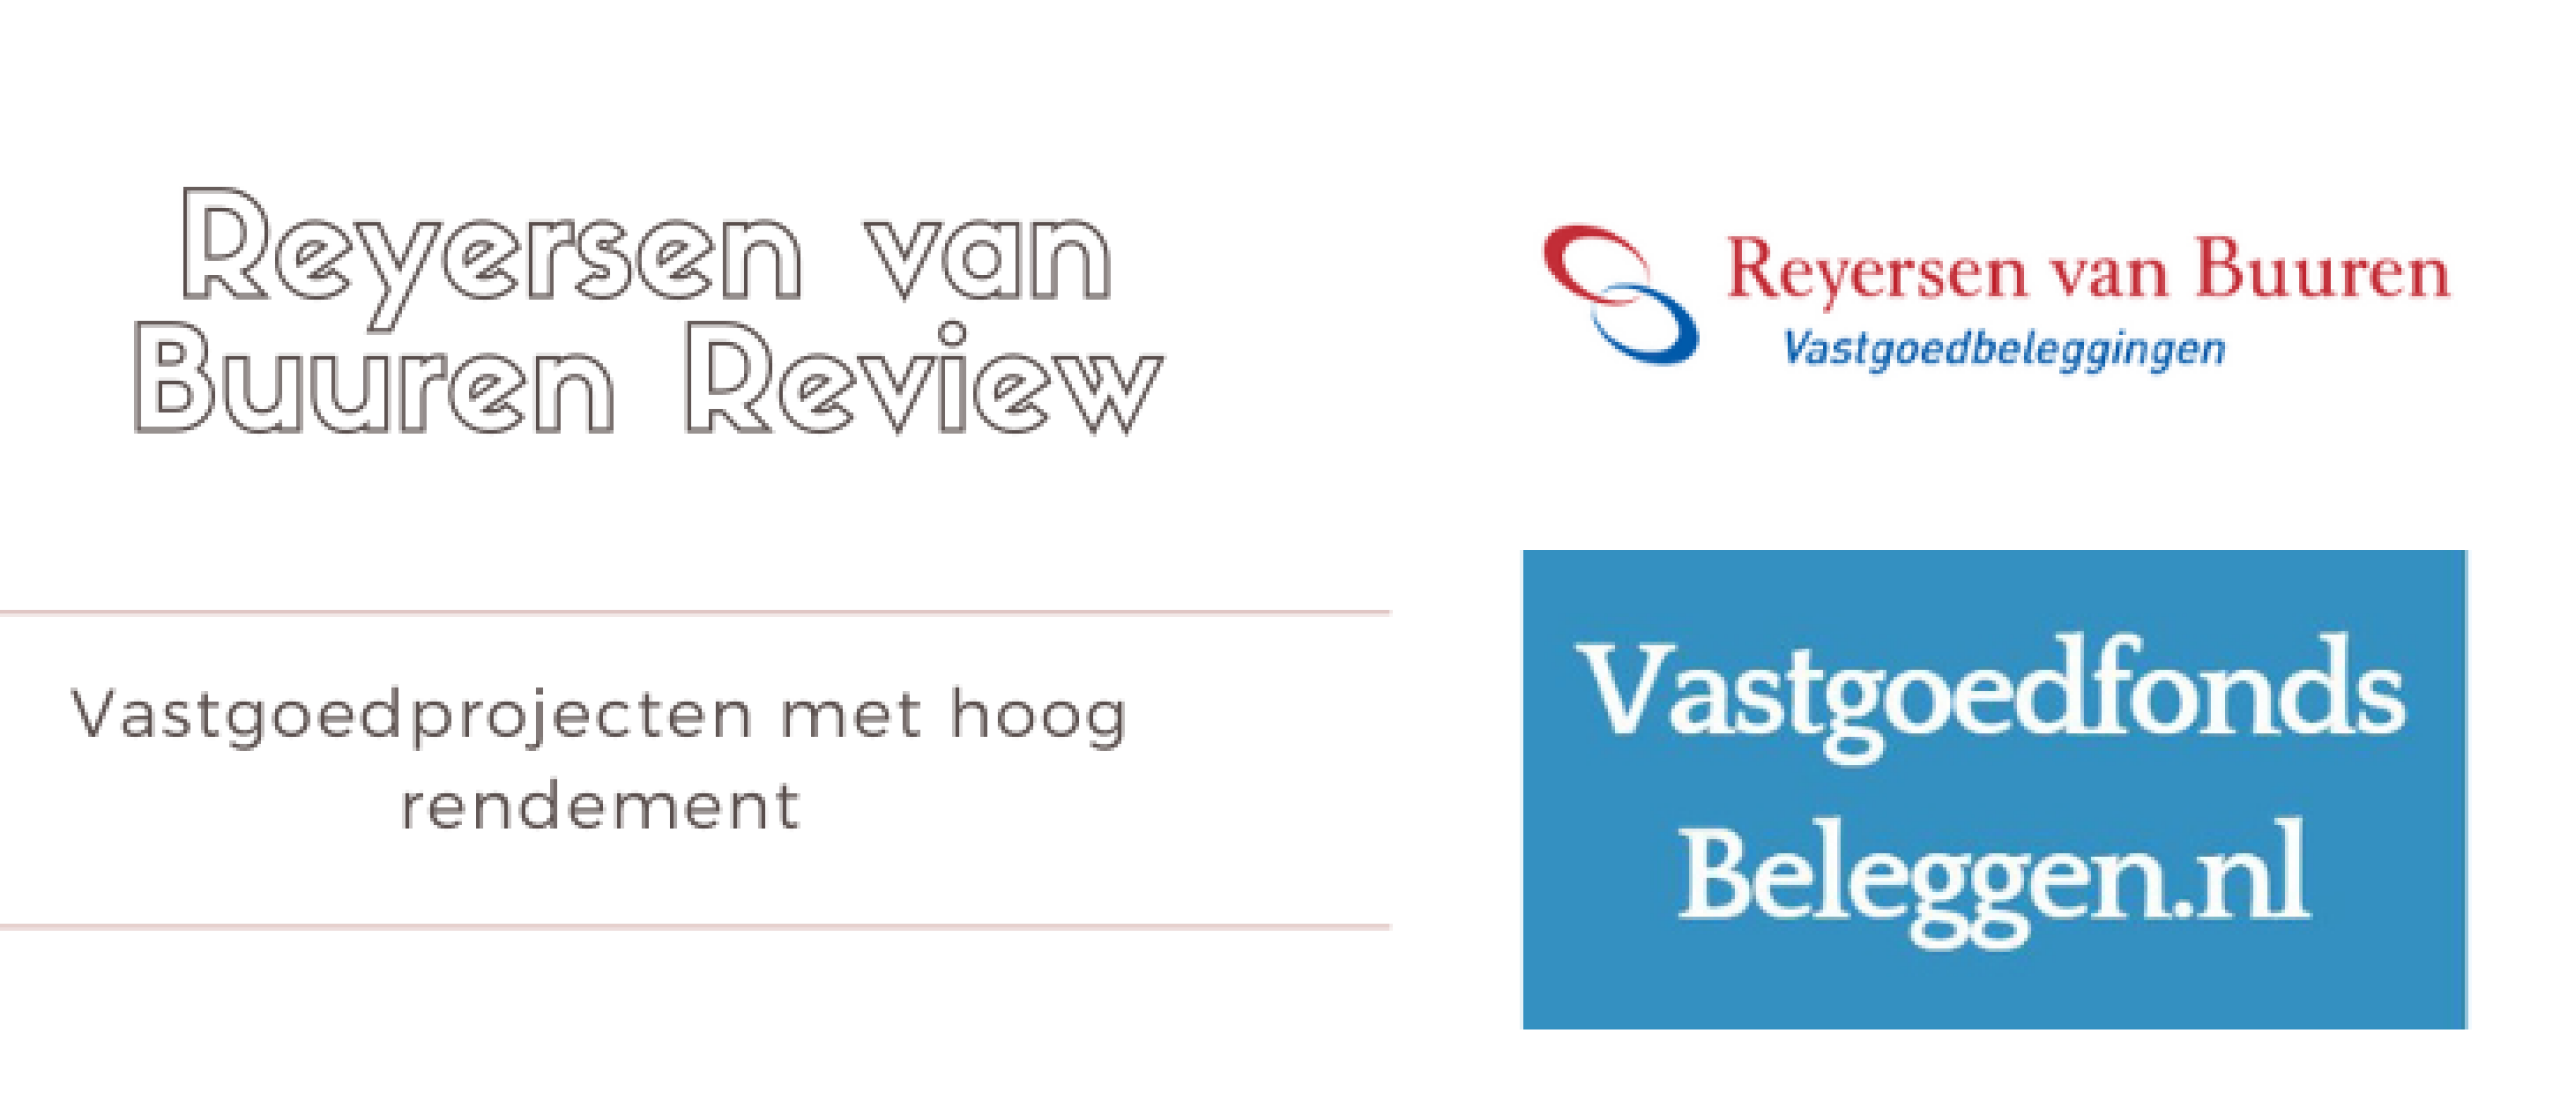 Reyersen van Buuren Review en Ervaringen | Vastgoedfonds Beleggen.nl